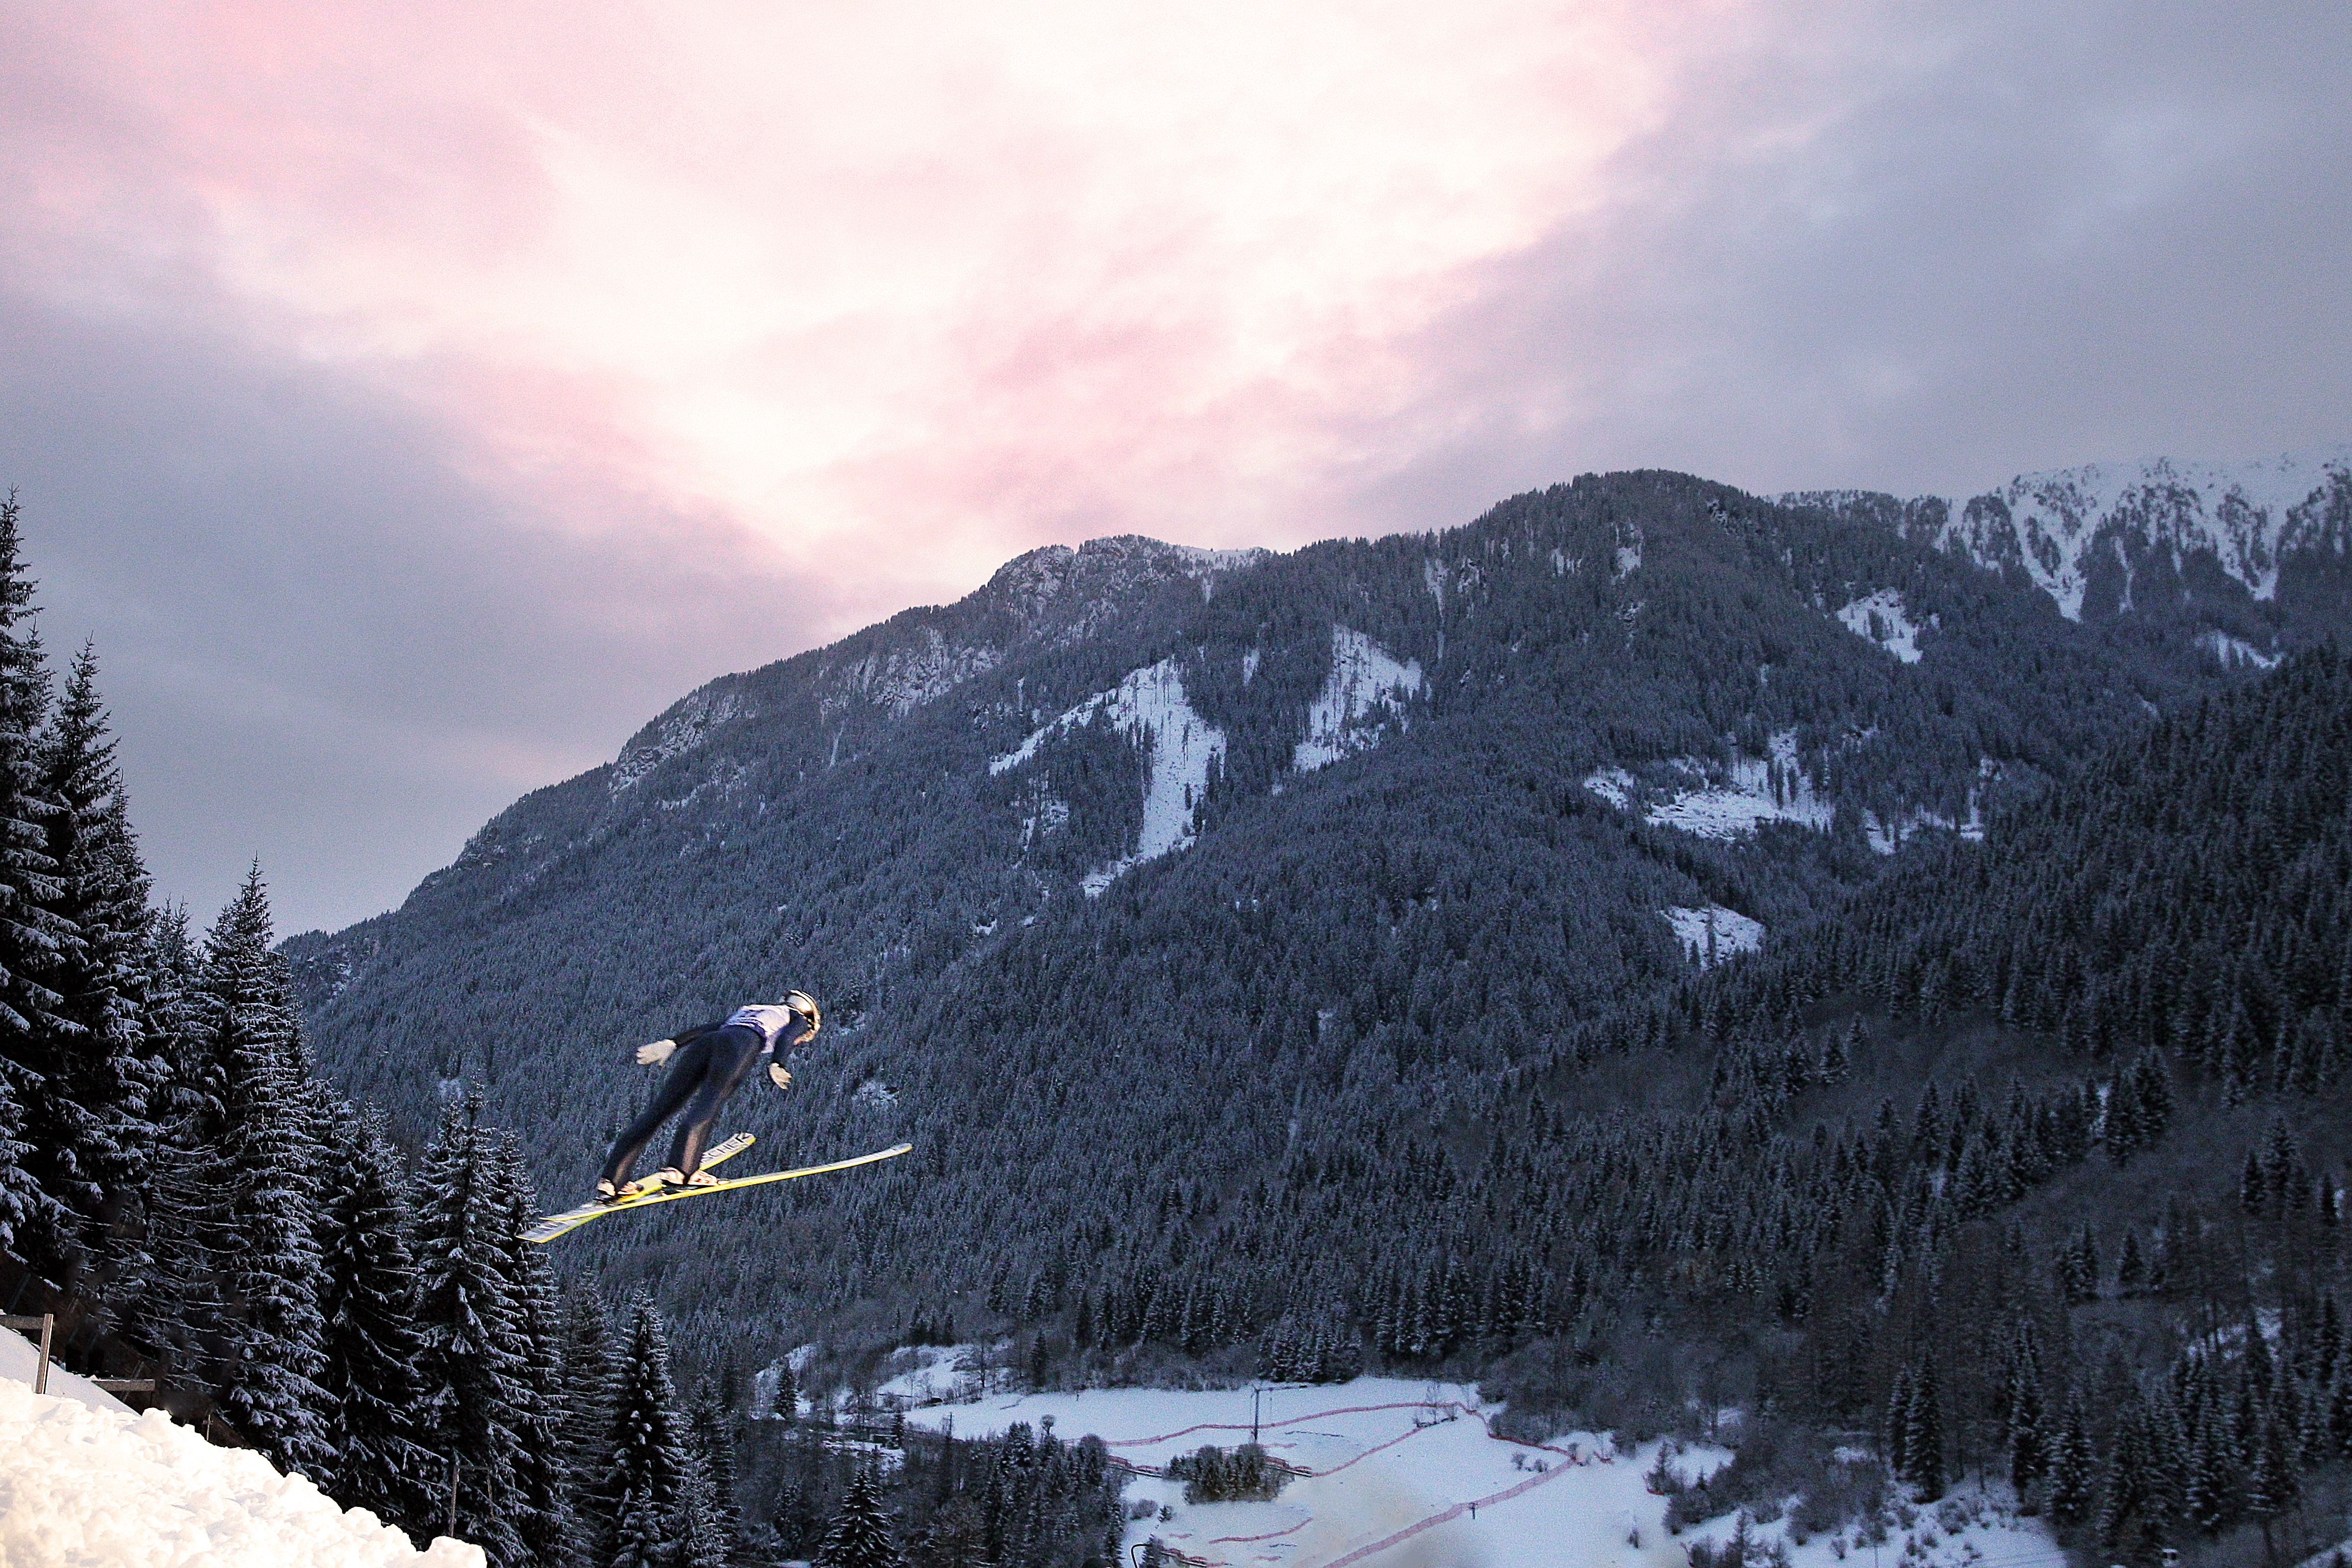 Atleta di ski jumping mentre è in volo